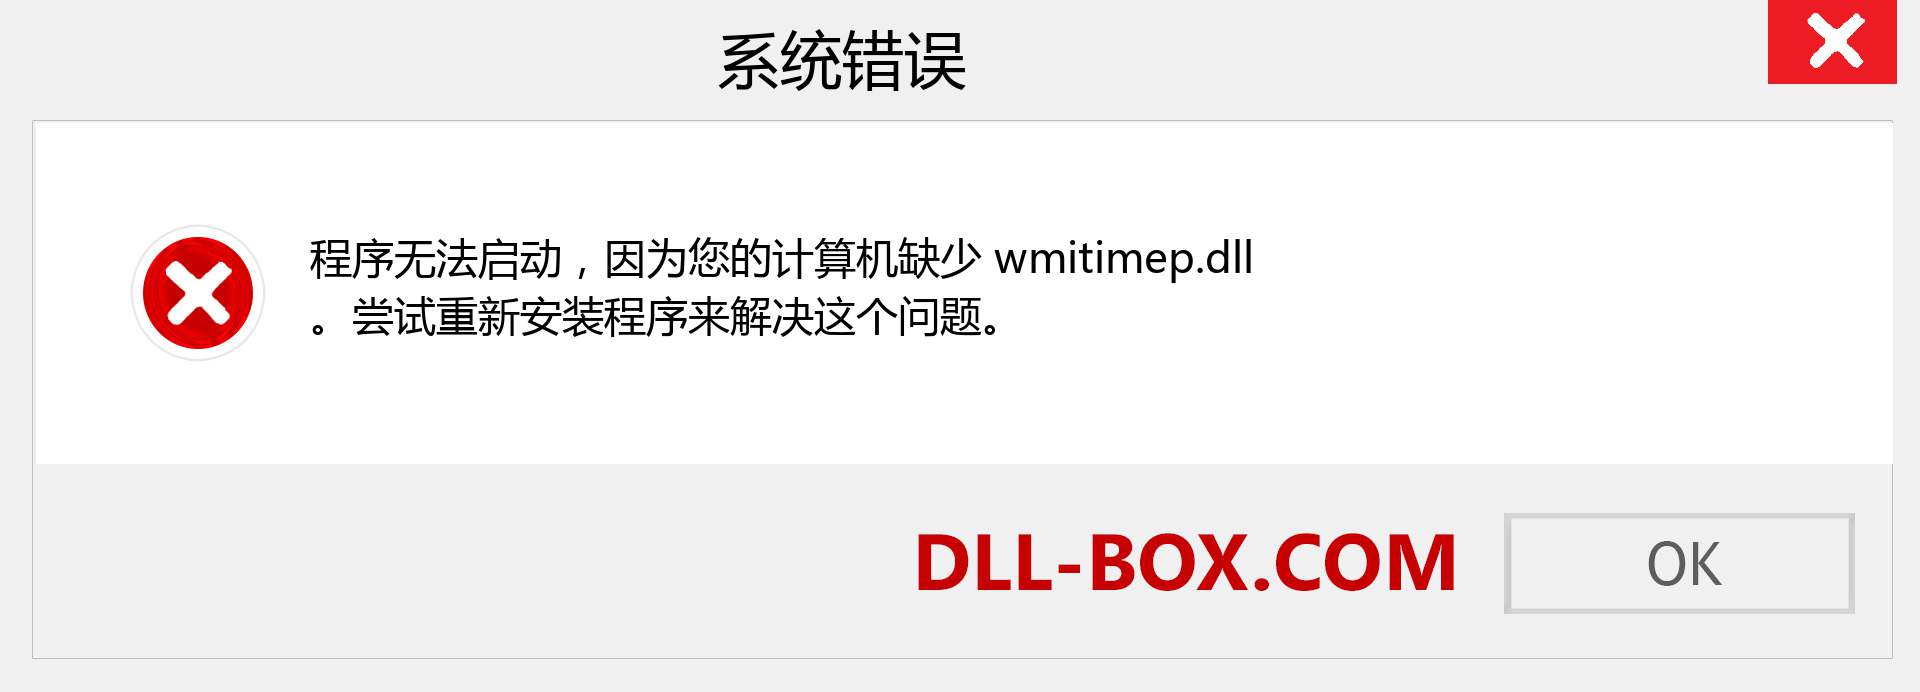 wmitimep.dll 文件丢失？。 适用于 Windows 7、8、10 的下载 - 修复 Windows、照片、图像上的 wmitimep dll 丢失错误